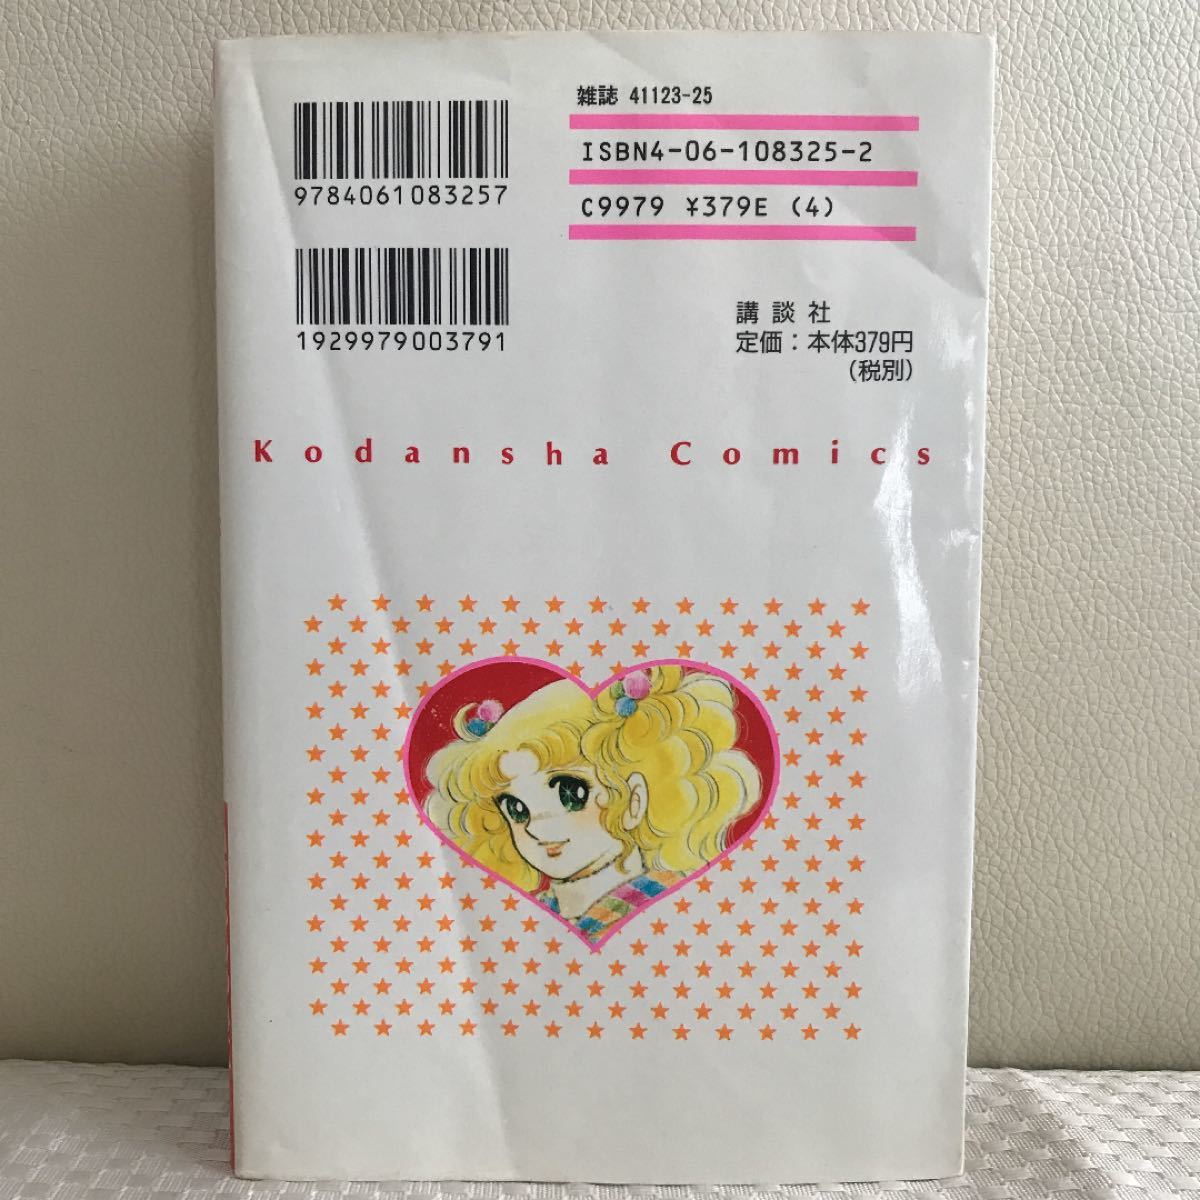 キャンディキャンディ 9 ( 講談社 コミックス なかよし ) いがらしゆみこ